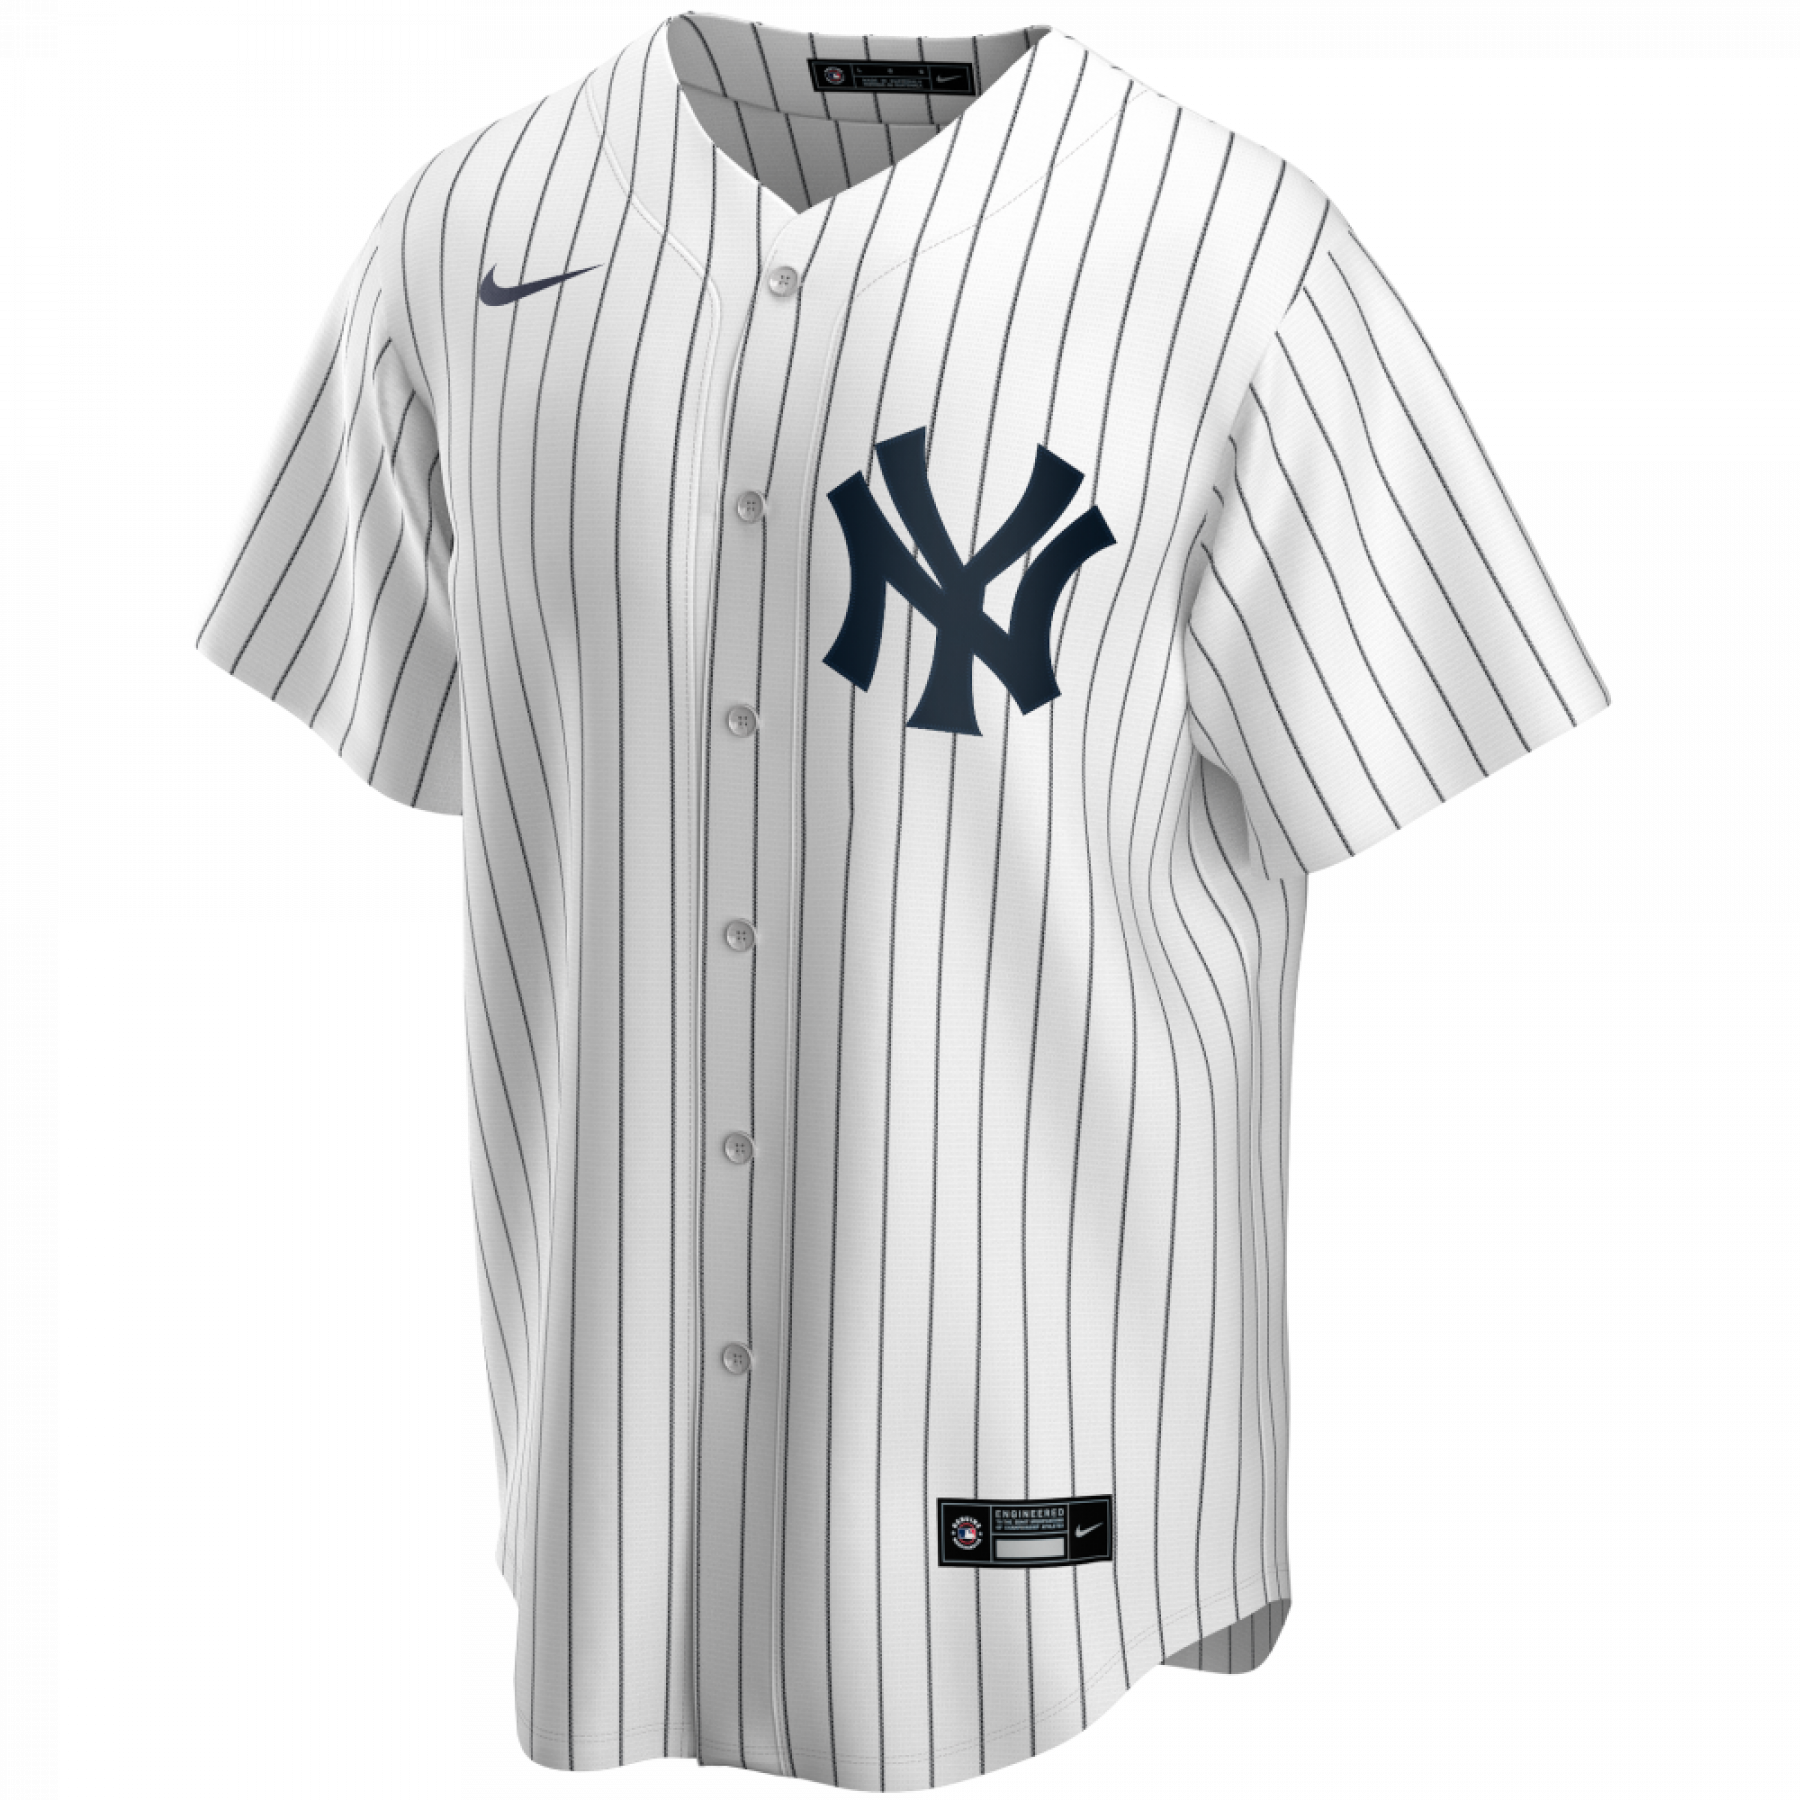 Réplica oficial de la camiseta de los New York Yankees